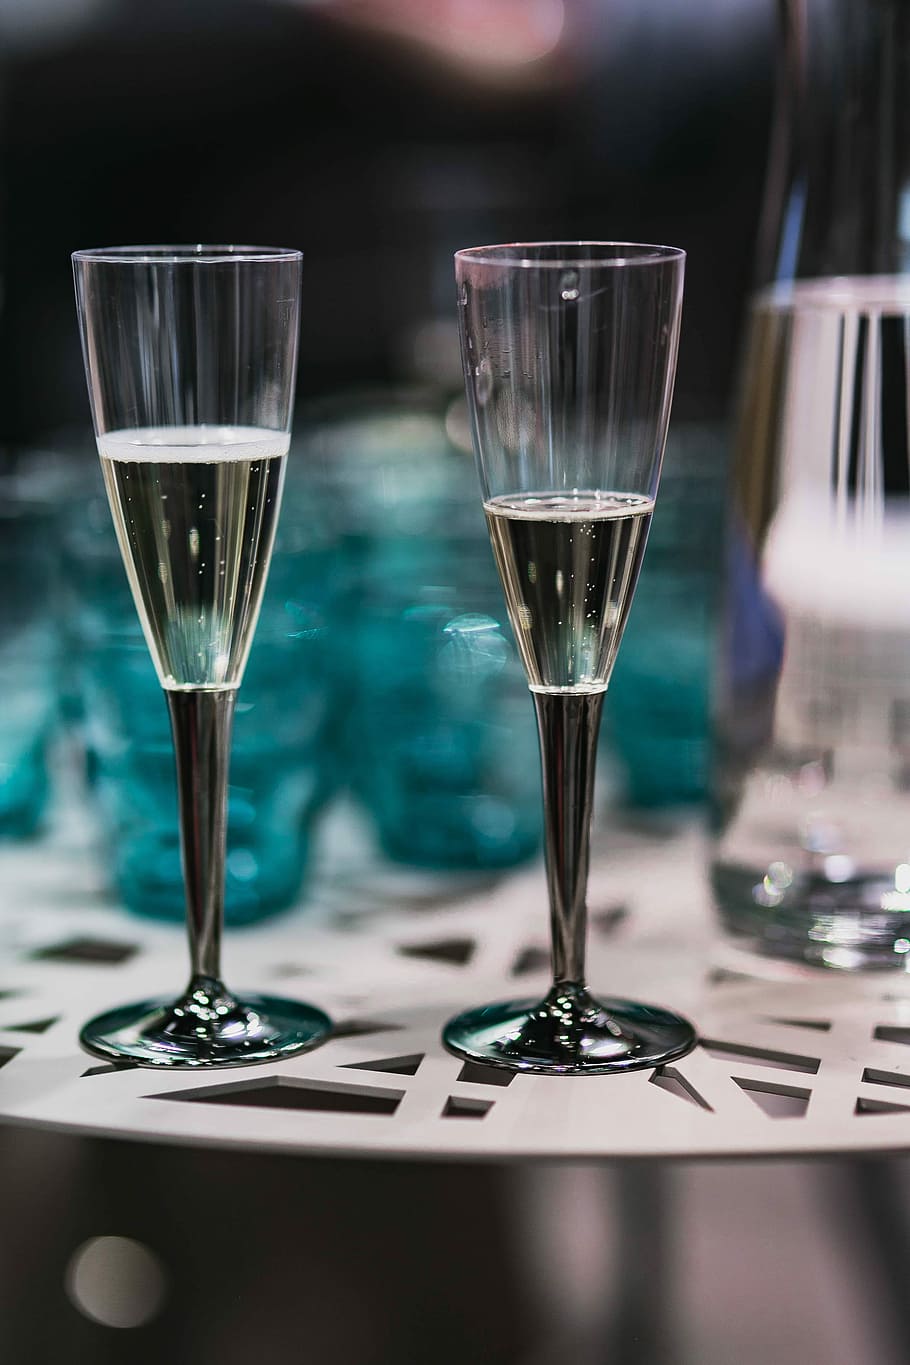 テーブル, シアングラス, 白, シアン, グラス, ドリンク, ガラス製品, 飲用グラス, お祝い, アルコール